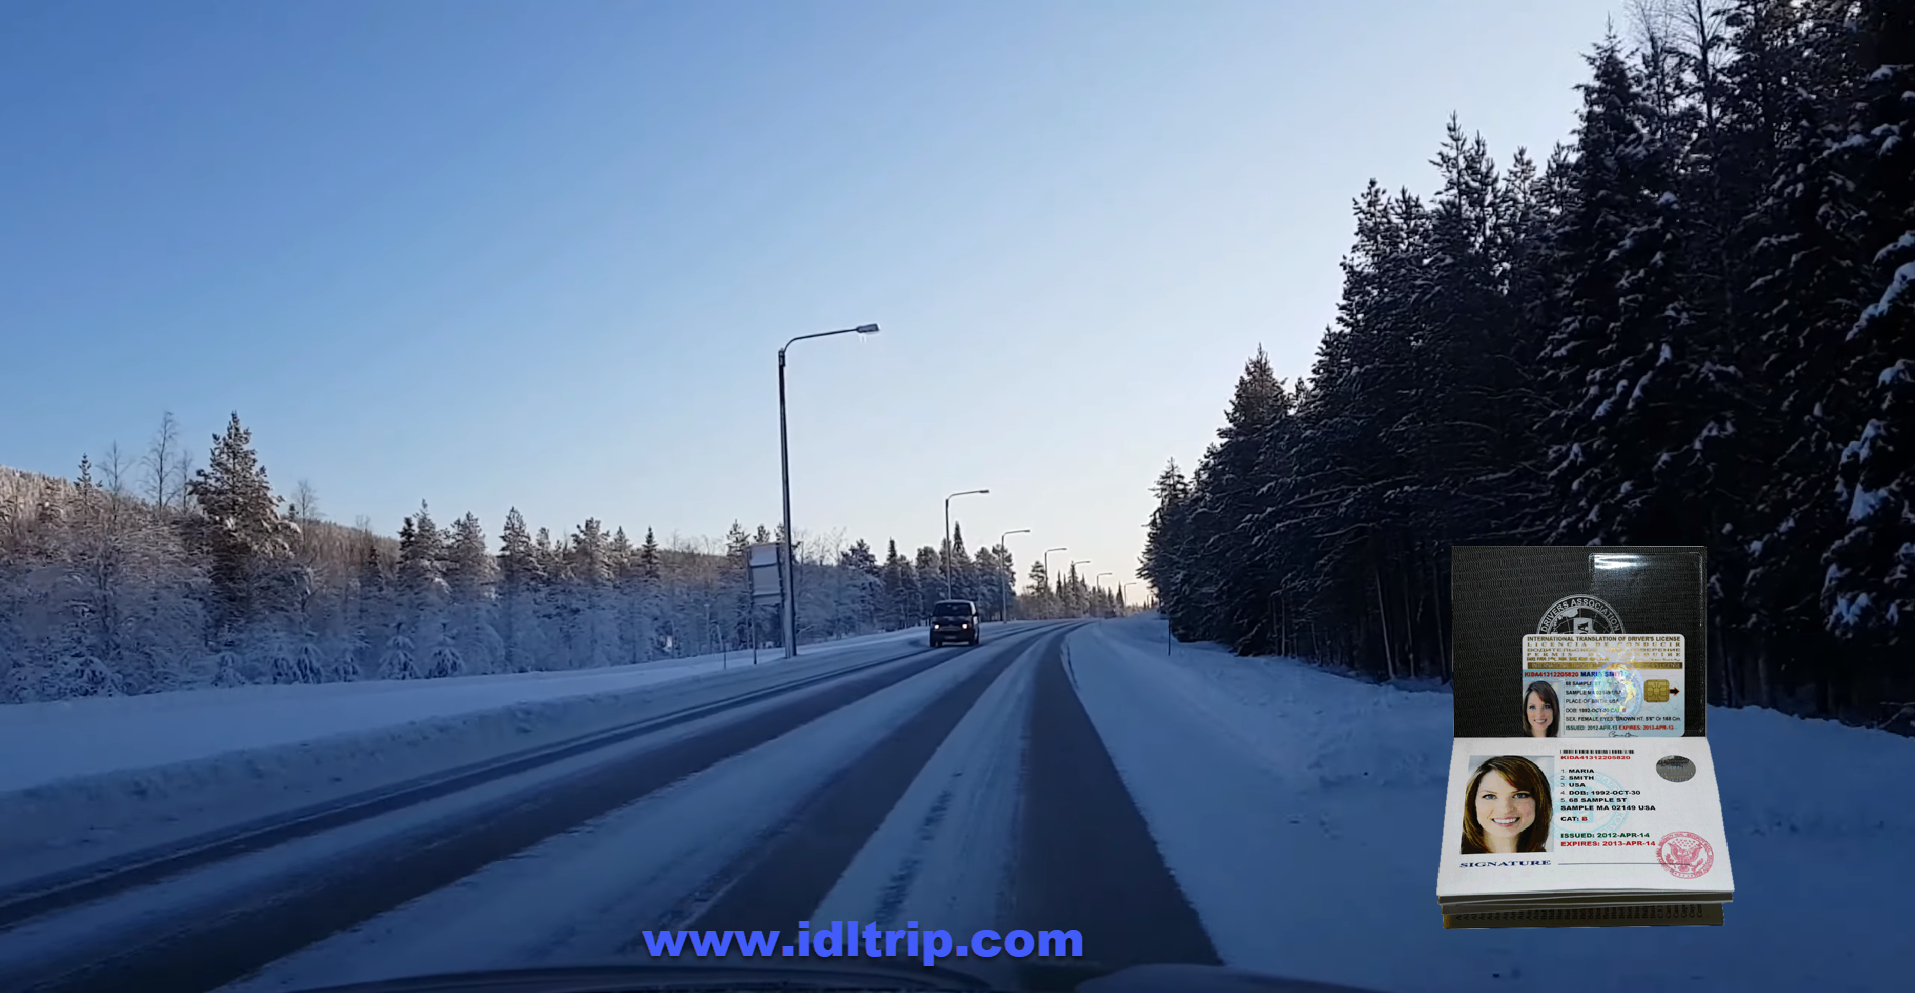 En hiver, la limite générale de vitesse est réduite partout à 80 km / h.